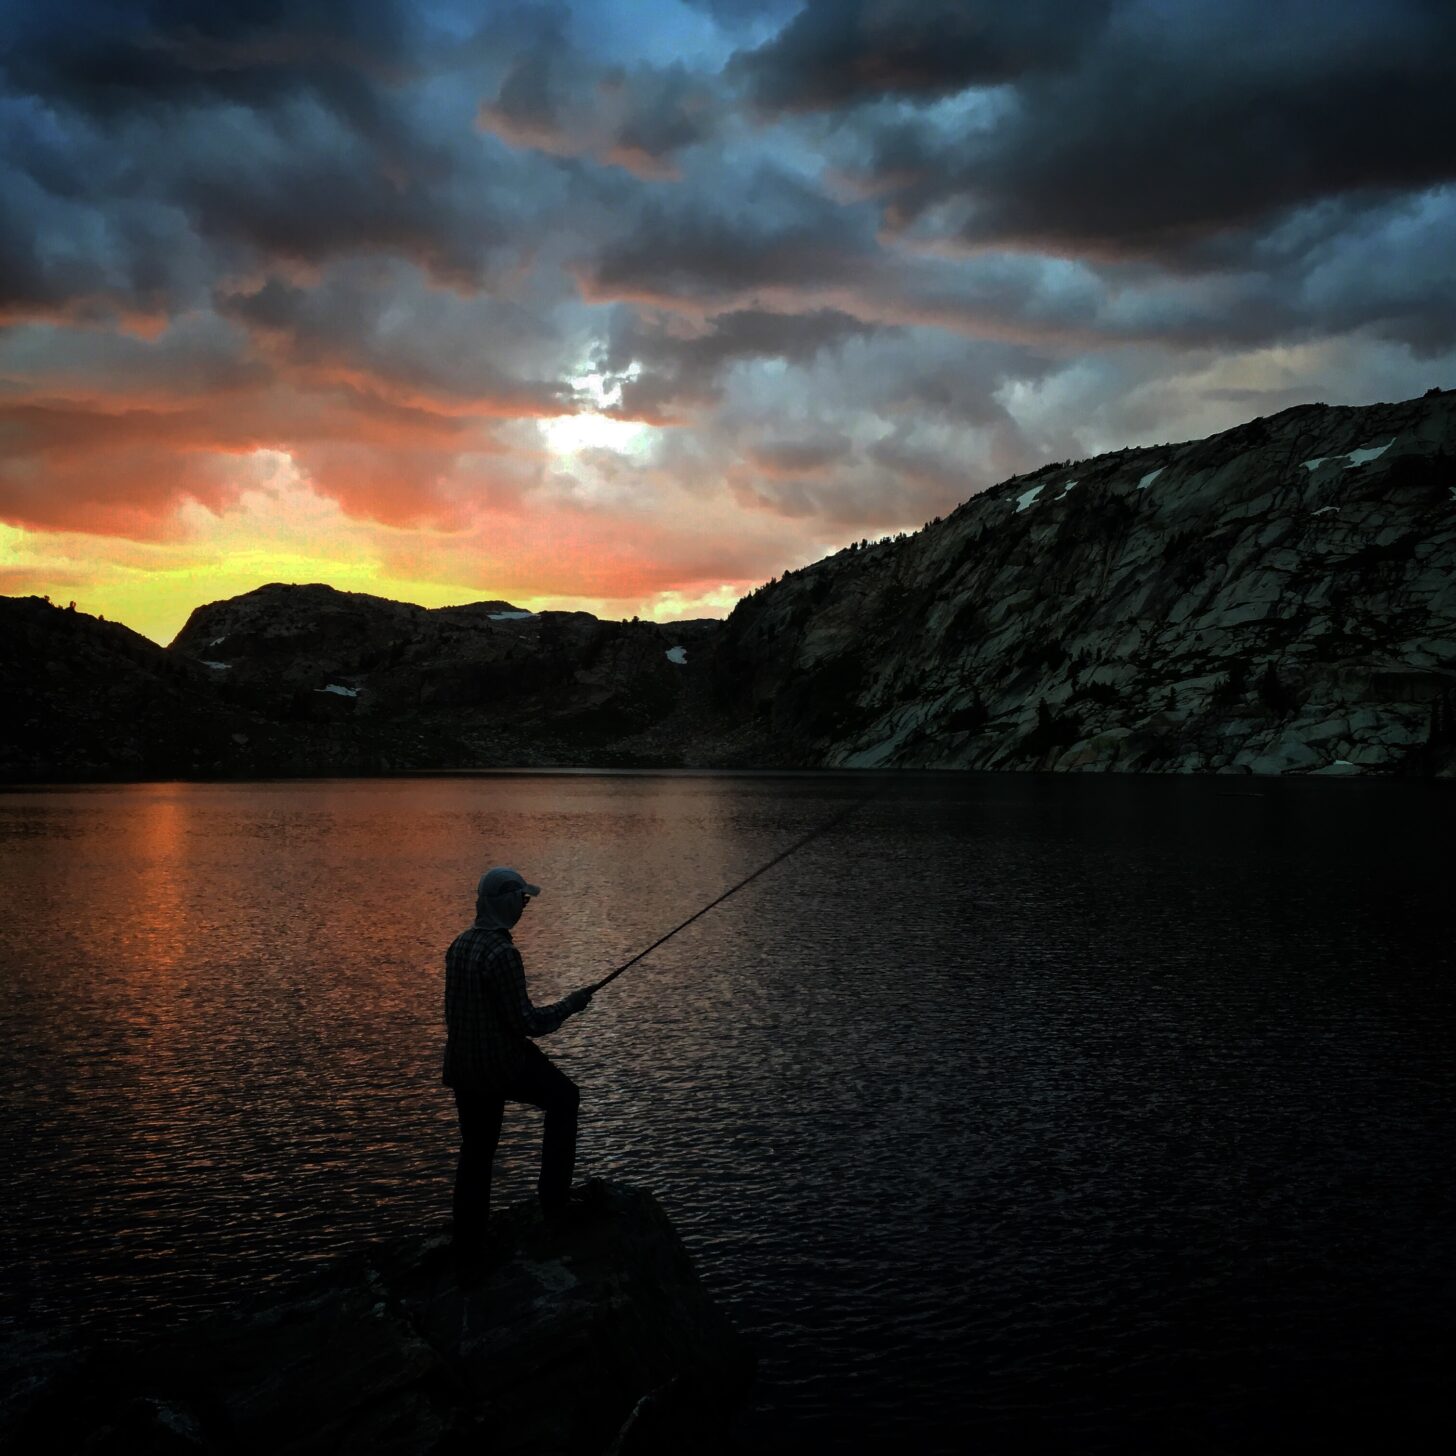 fishing at an alpine lake at sunset